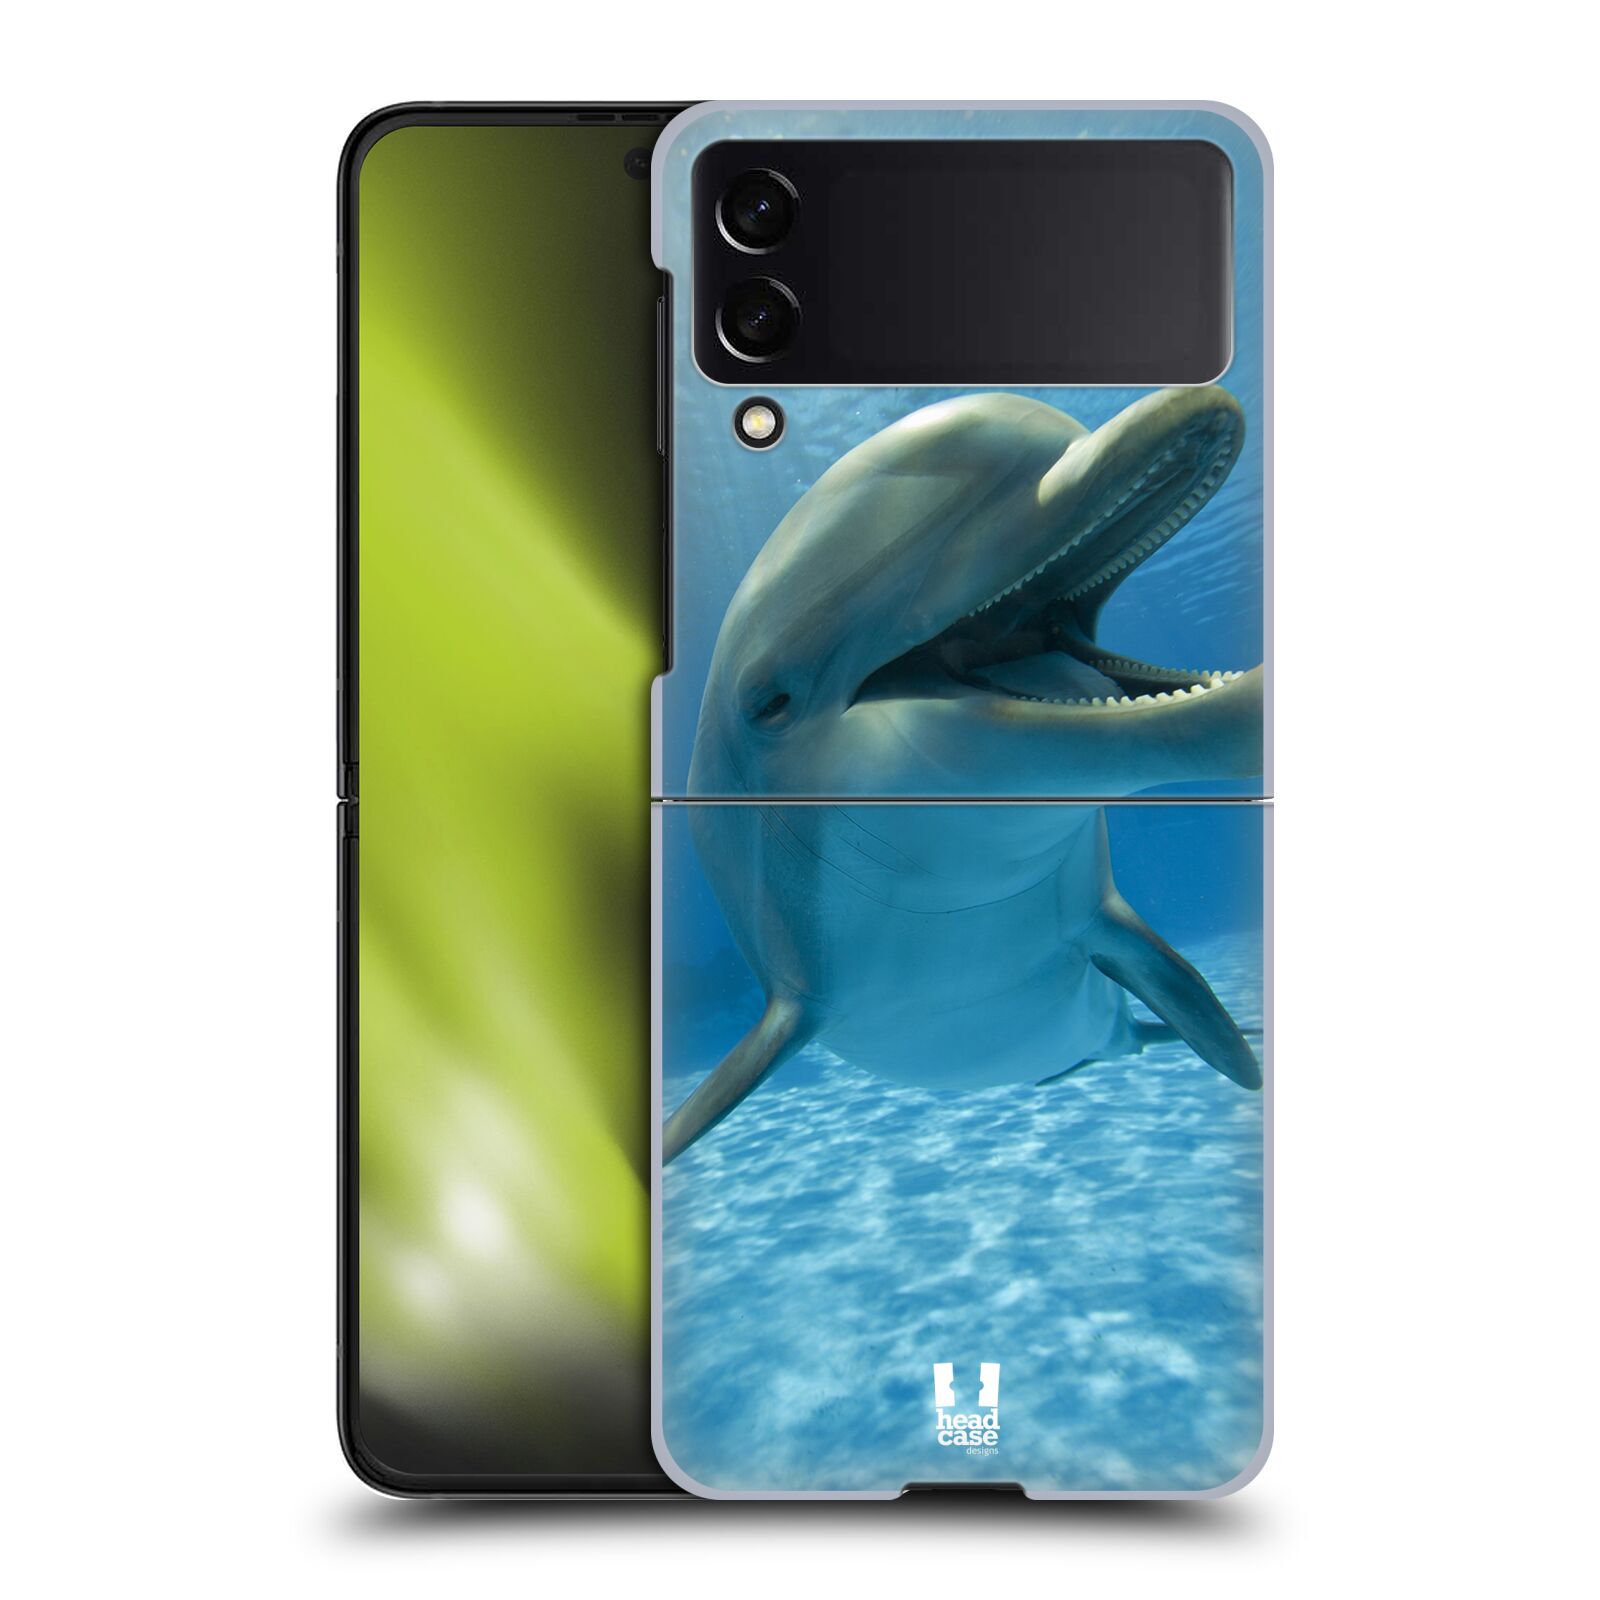 Zadní obal pro mobil Samsung Galaxy Z Flip 4 - HEAD CASE - Svět zvířat delfín v moři